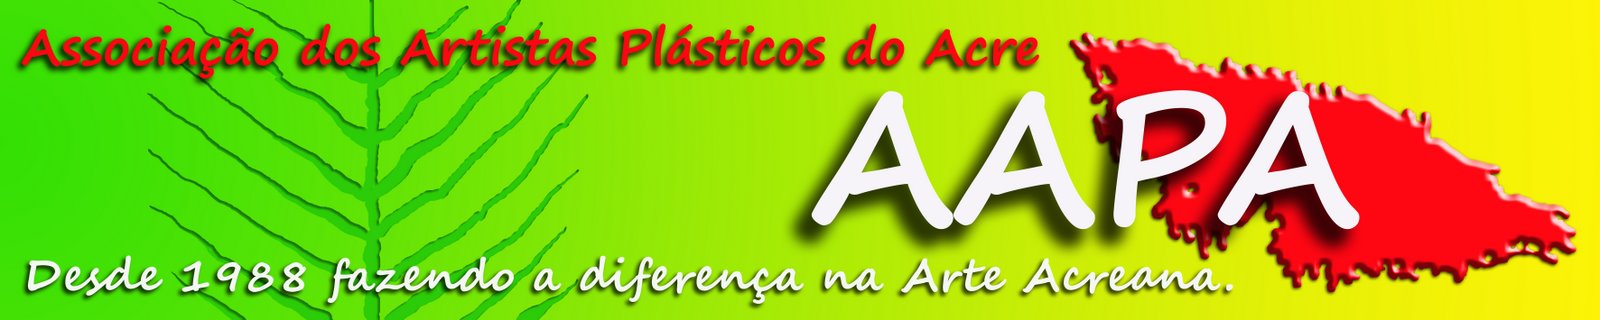 Associação dos Artistas Plásticos do Acre